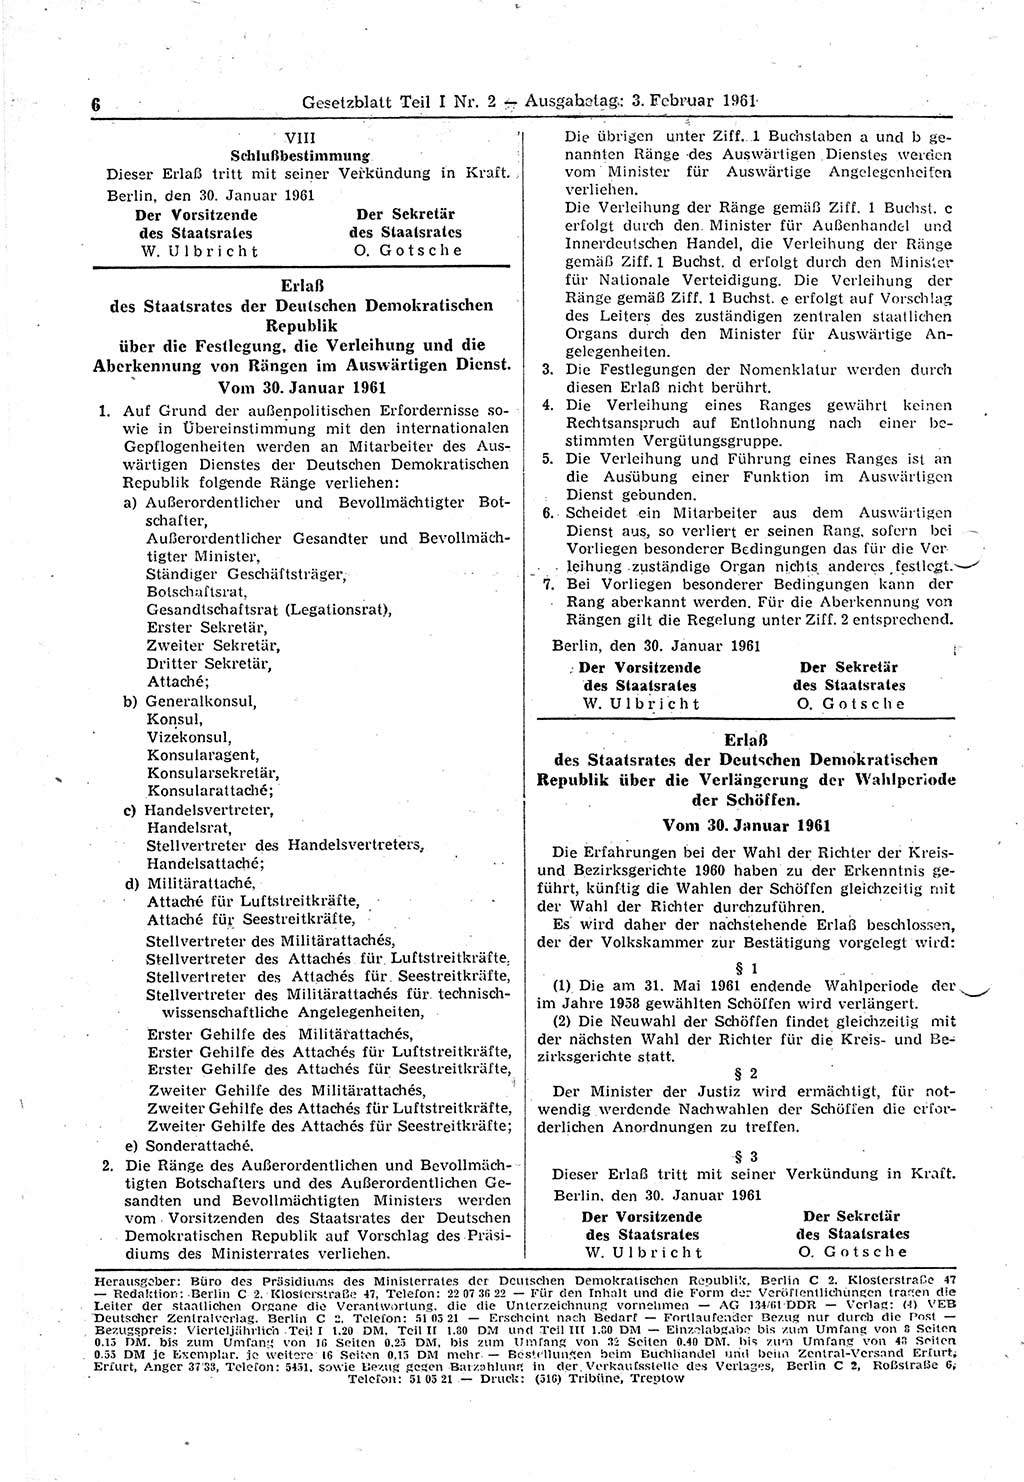 Gesetzblatt (GBl.) der Deutschen Demokratischen Republik (DDR) Teil Ⅰ 1961, Seite 6 (GBl. DDR Ⅰ 1961, S. 6)